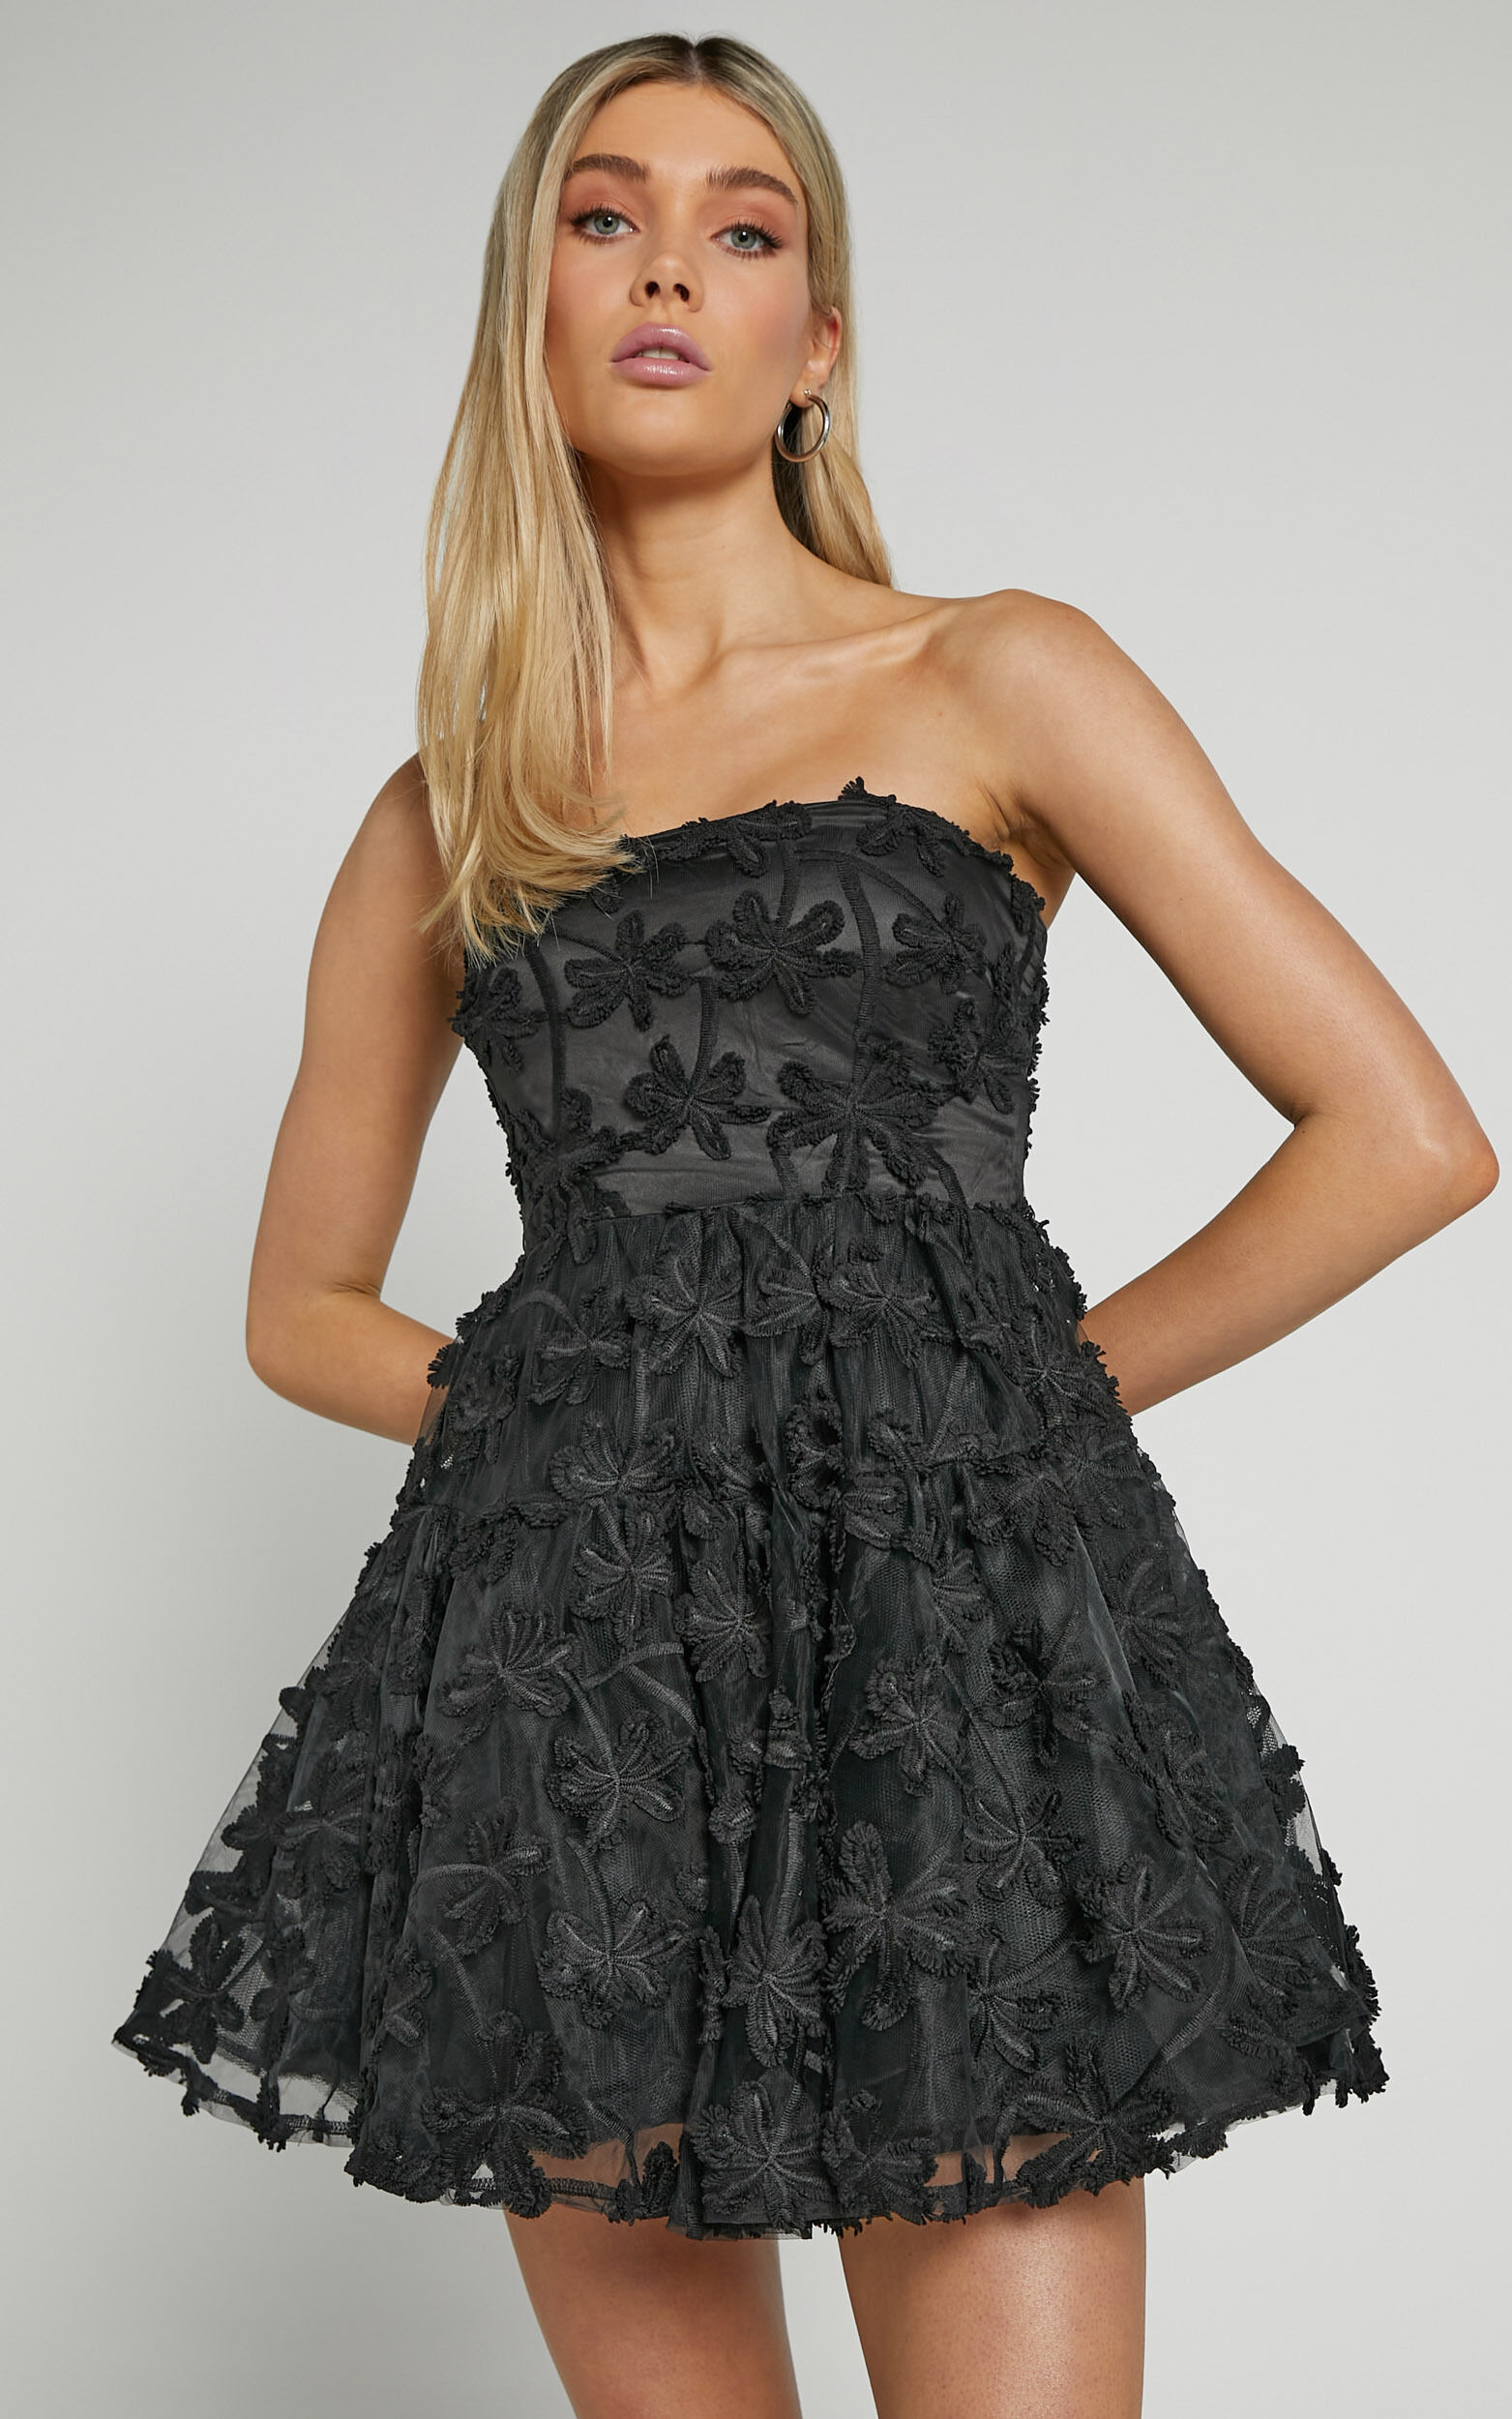 Rheiva Mini Dress - Strapless 3D Embroidery Dress in Black - 10, BLK1